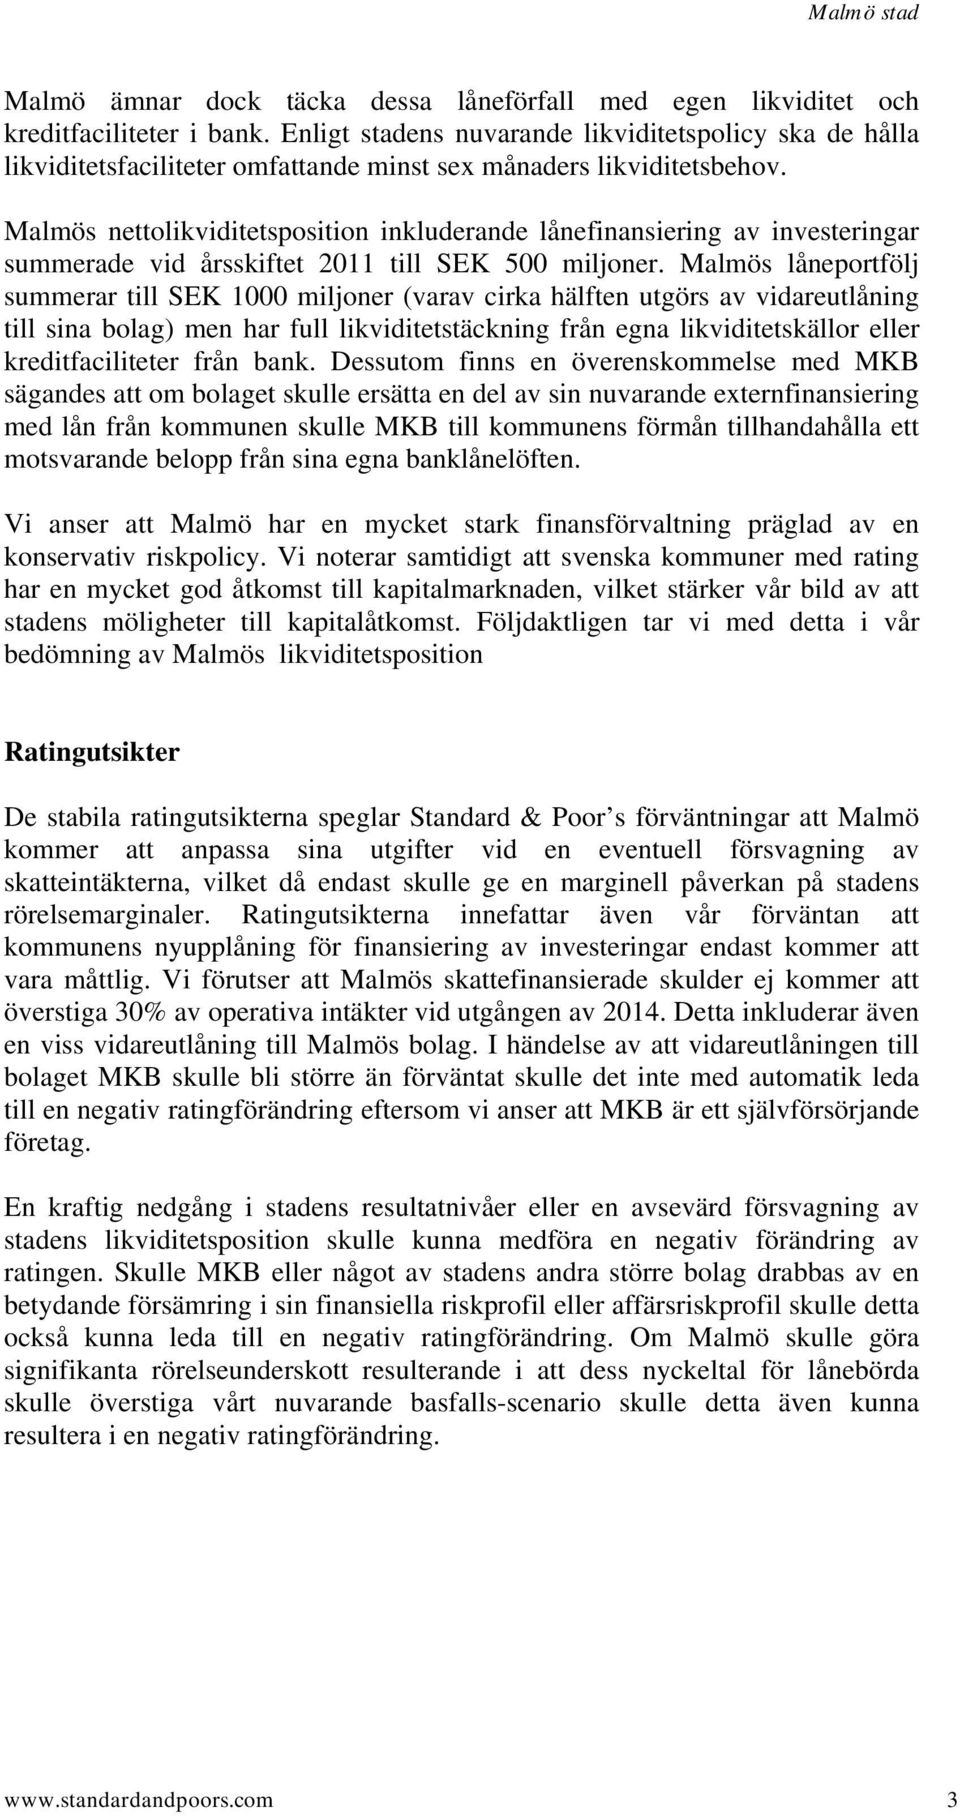 Malmös nettolikviditetsposition inkluderande lånefinansiering av investeringar summerade vid årsskiftet 2011 till SEK 500 miljoner.